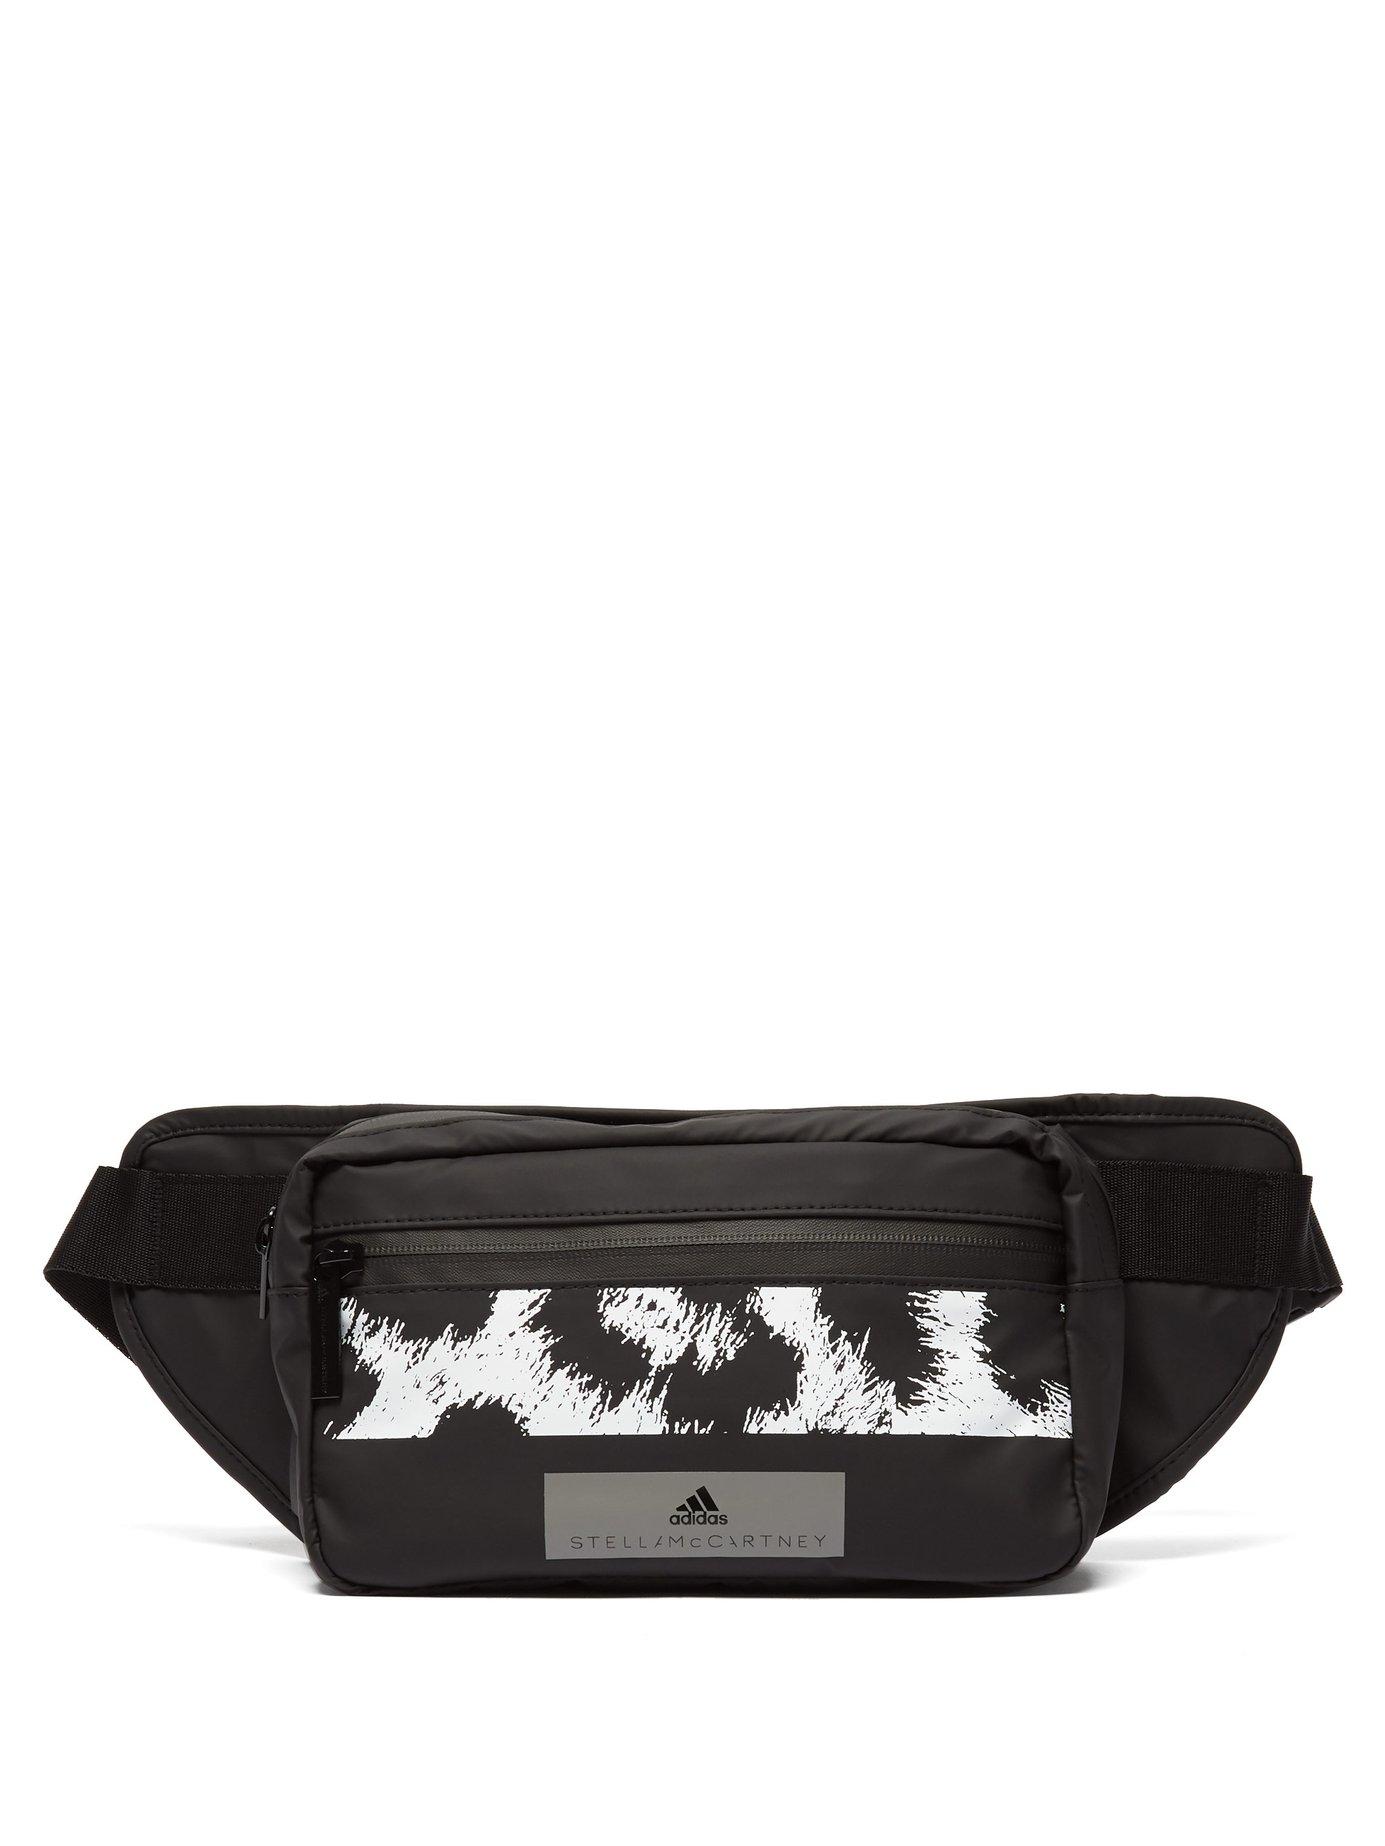 adidas By Stella McCartney Leopard Print Belt Bag in Black - Lyst